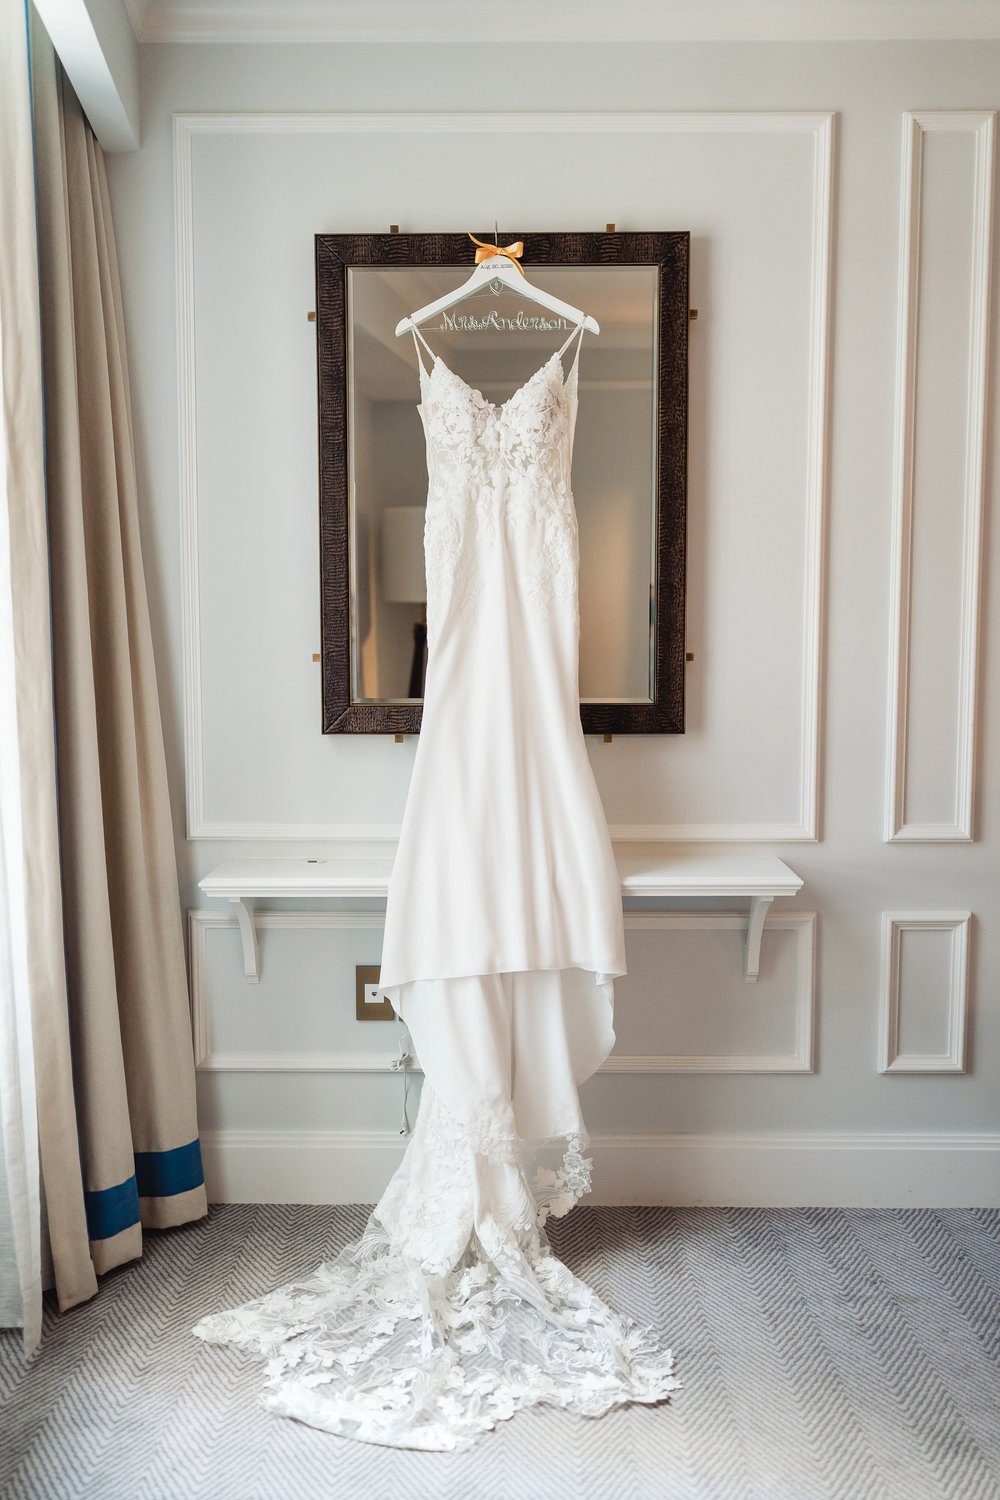 hanging wedding dress at Langham hotel